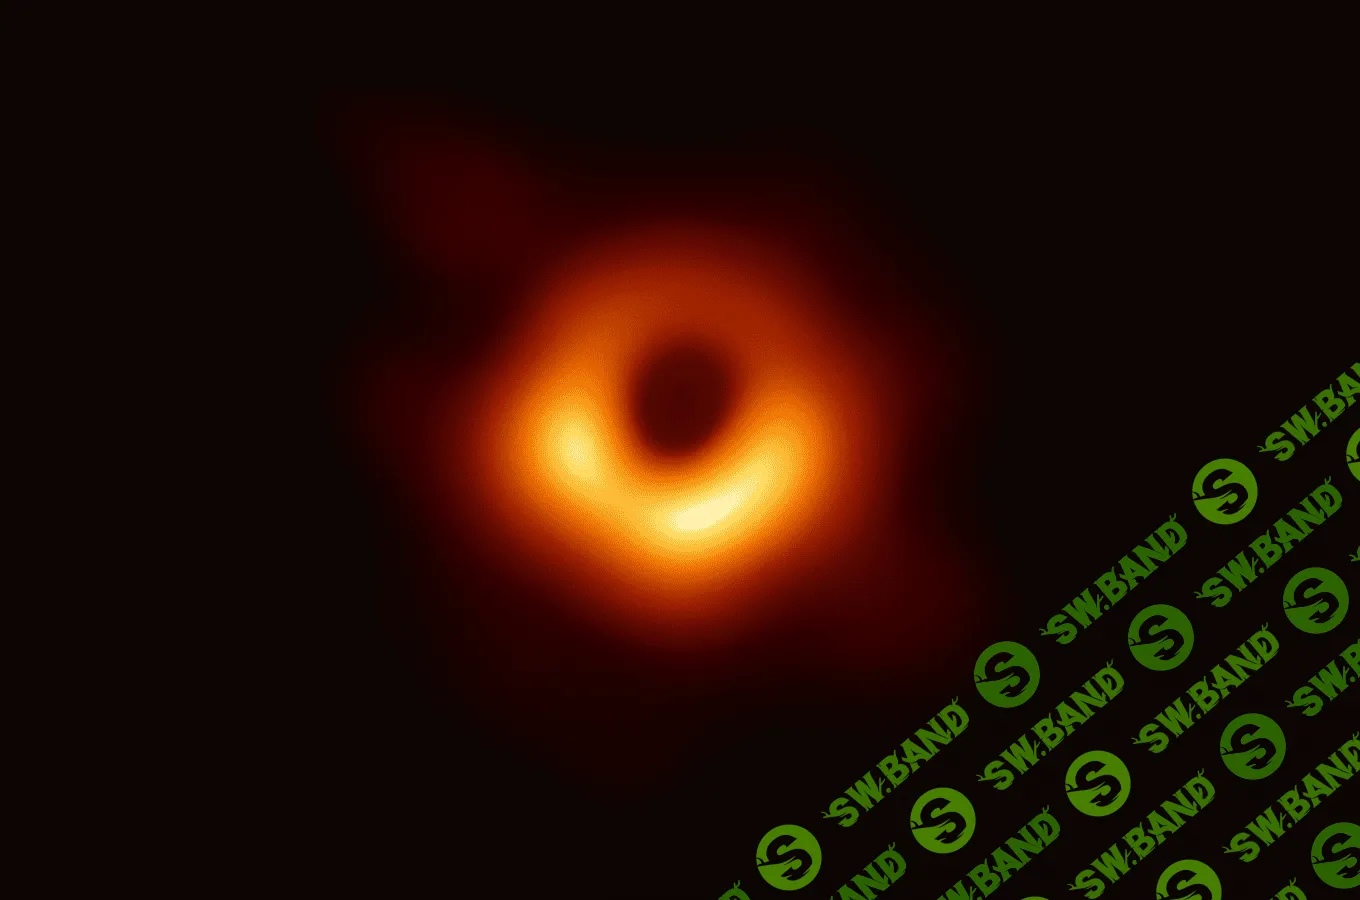 Ученые впервые показали реальное изображение черной дыры